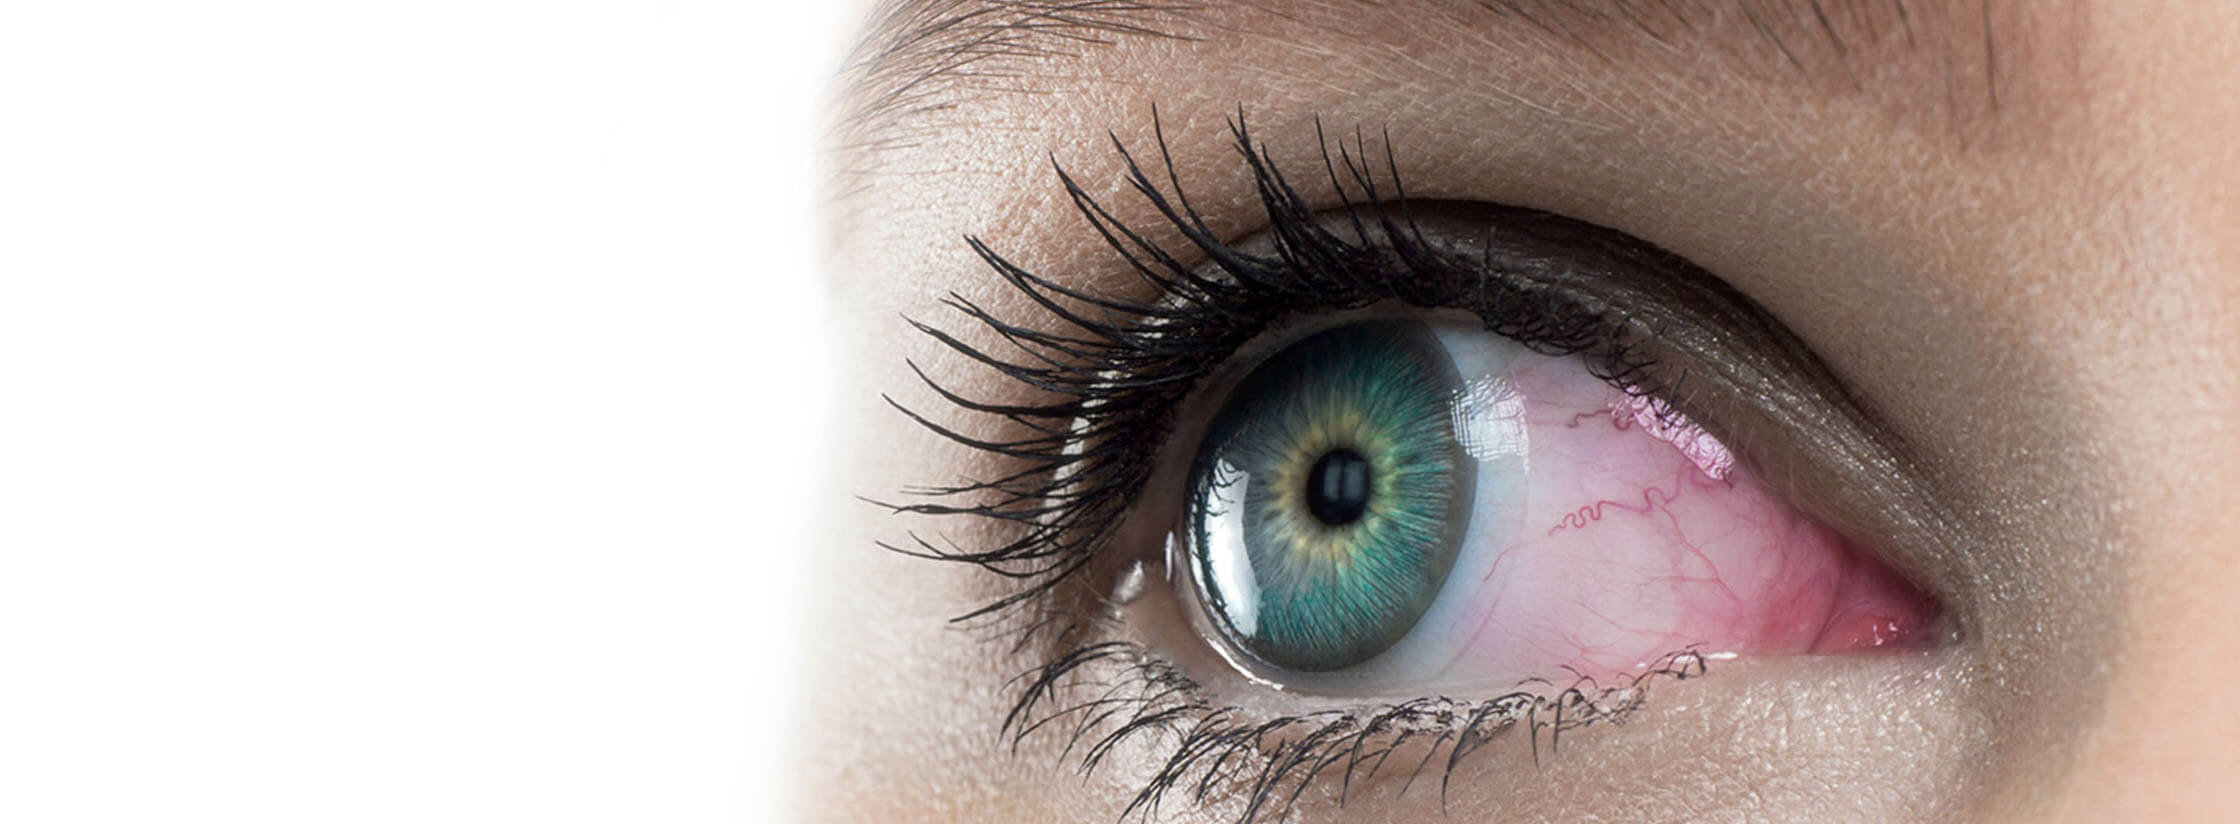 Een close-up van een rood oog met een contactlens in